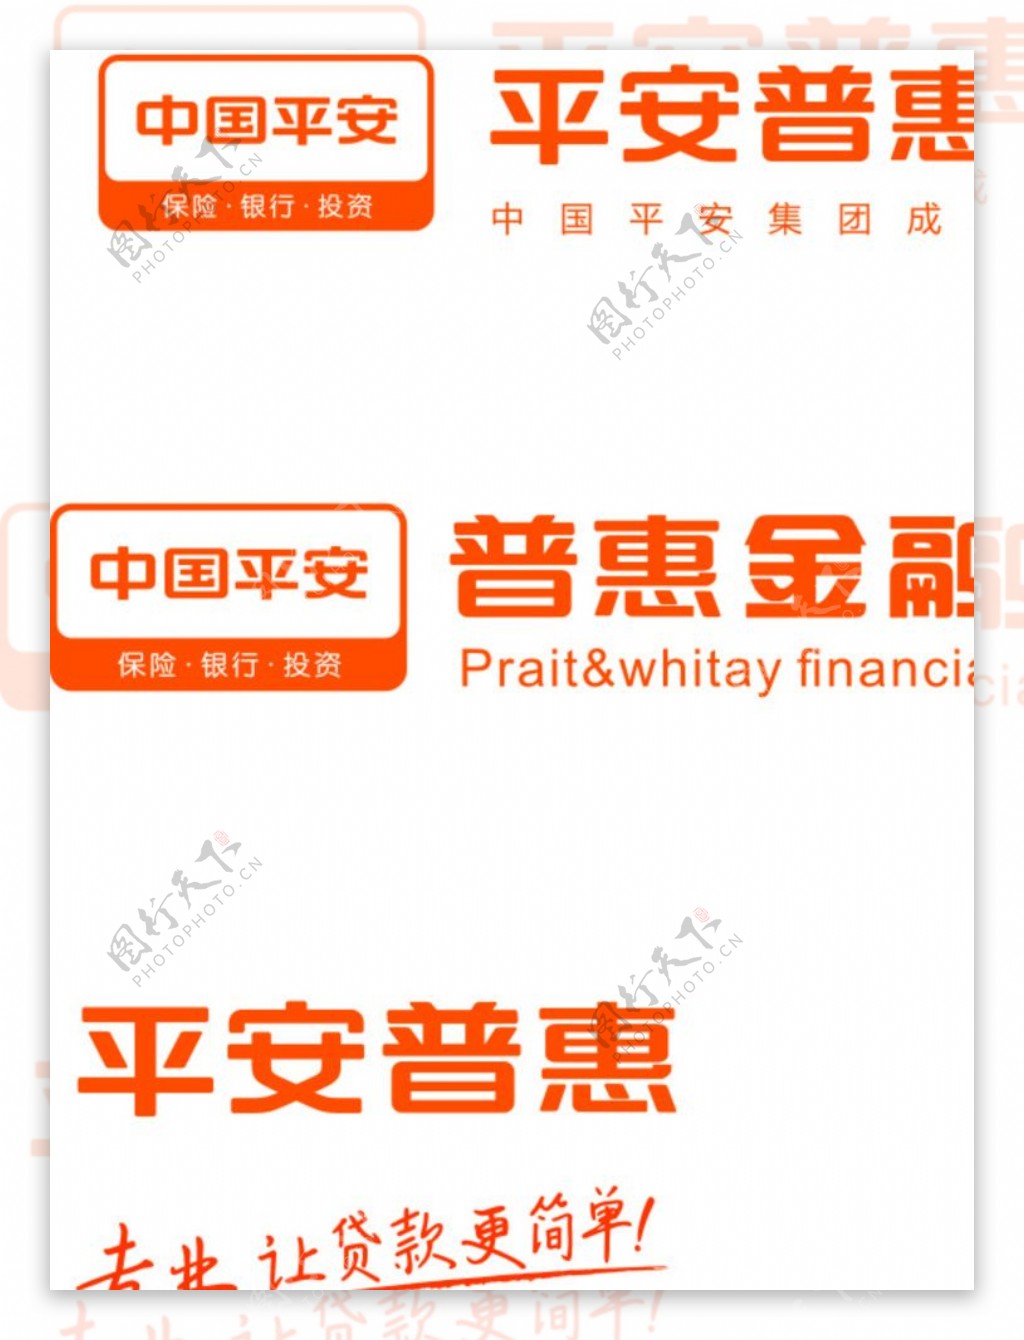 平安普惠logo